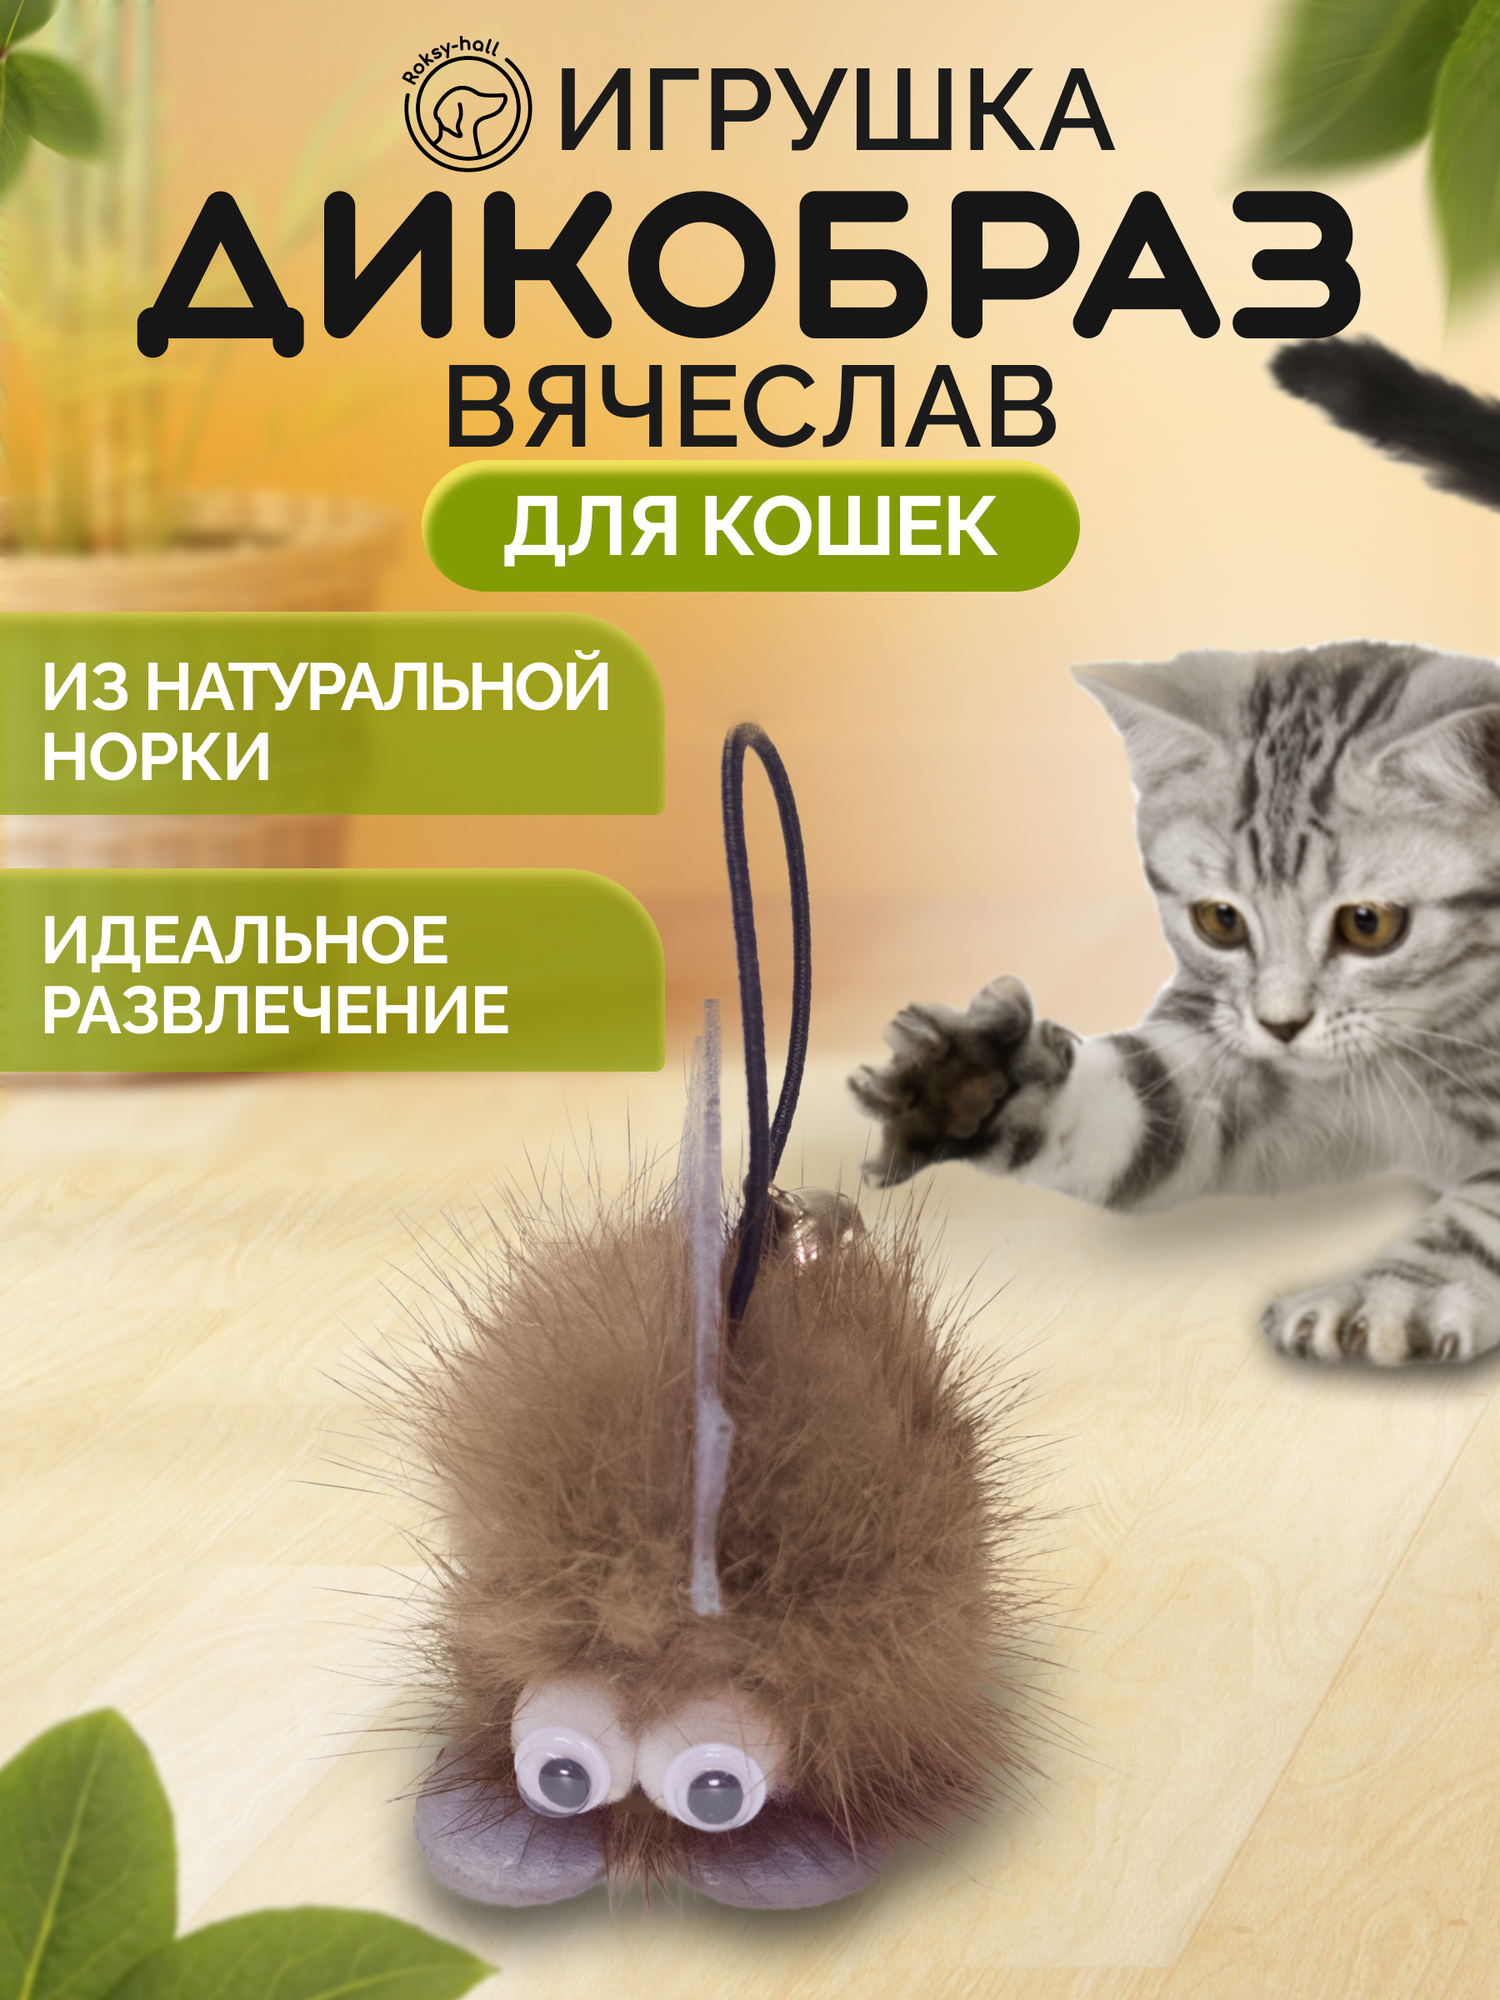 Игрушка для кошек и котов Roksy-hall, Дикобраз Вячеслав, коричневый, с бубенчиком, из норки - фотография № 1